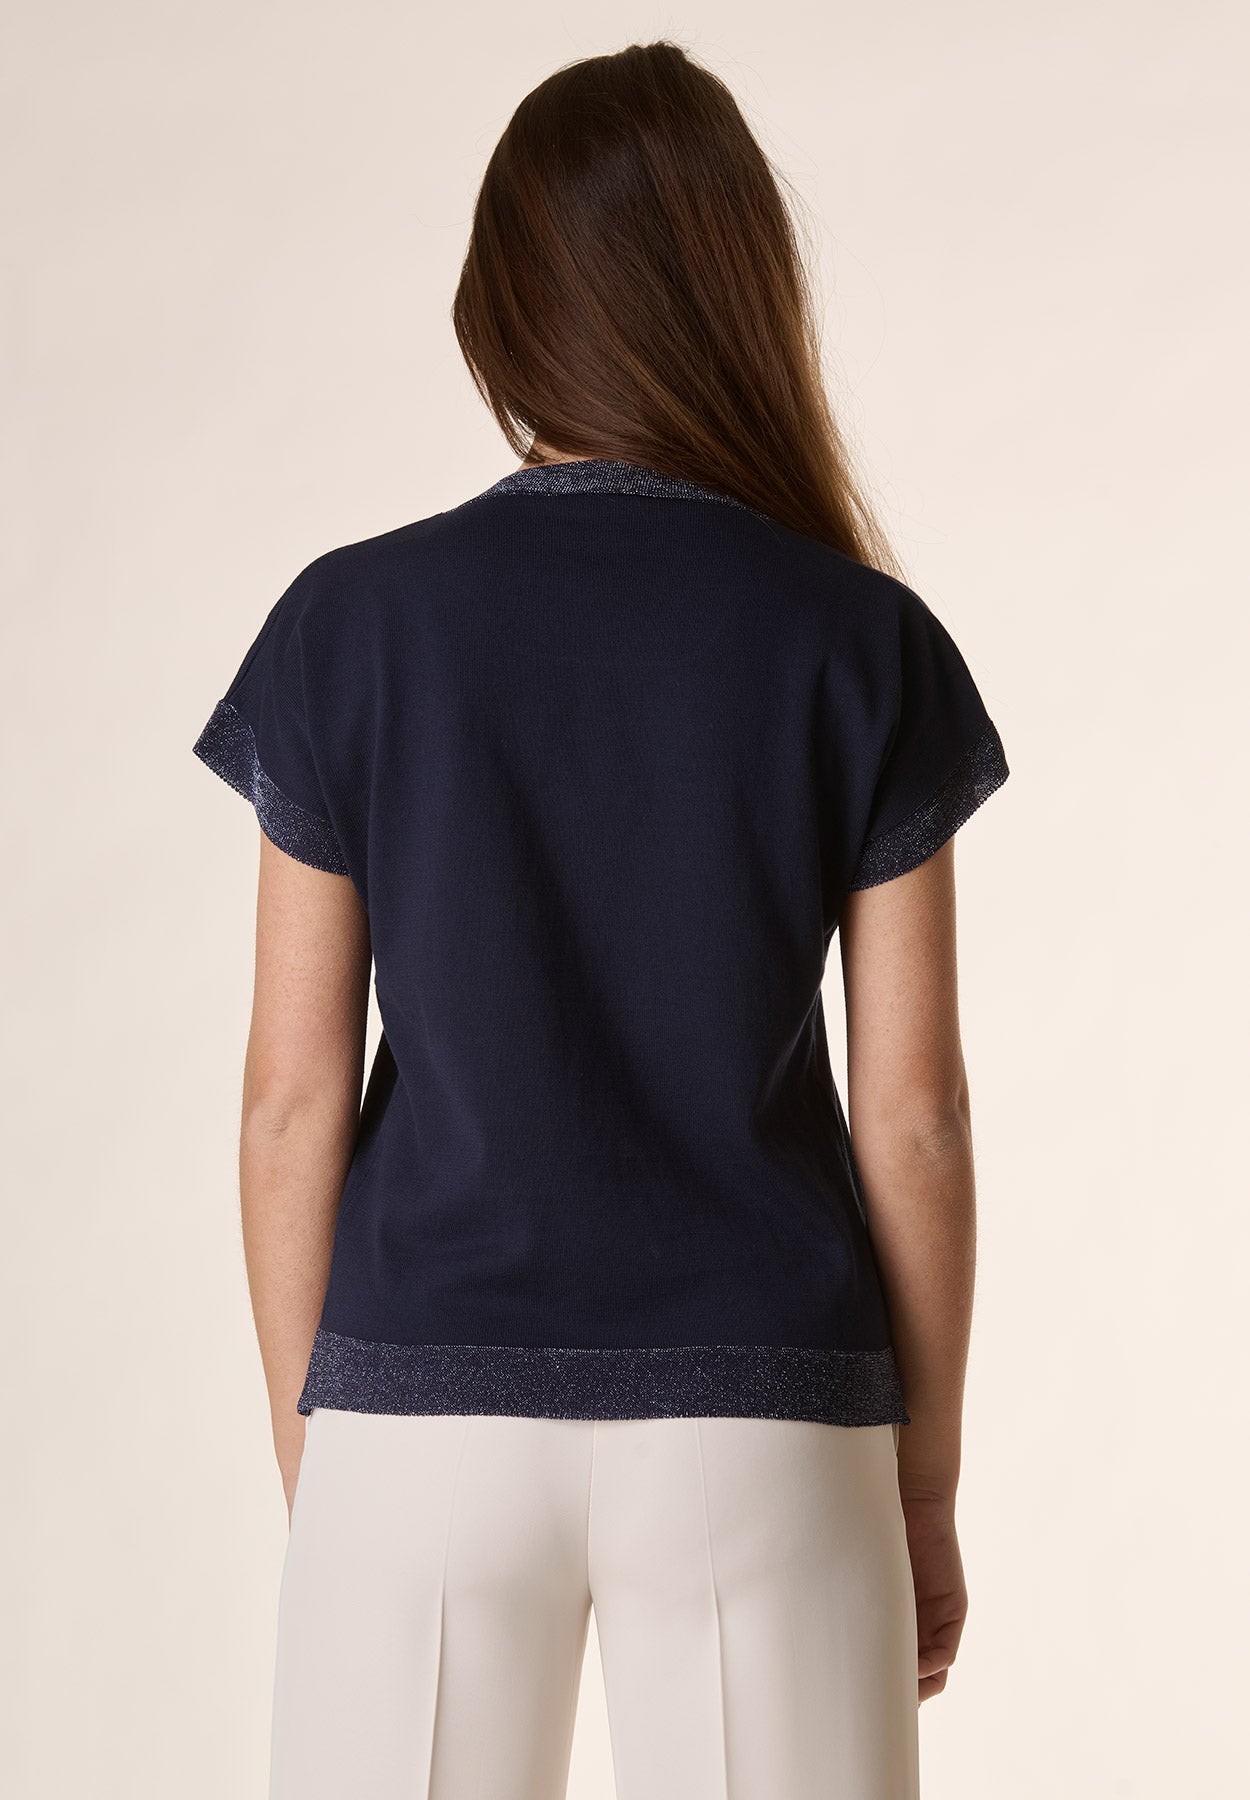 Blaues Trikot-T-Shirt mit Glitzerdetails